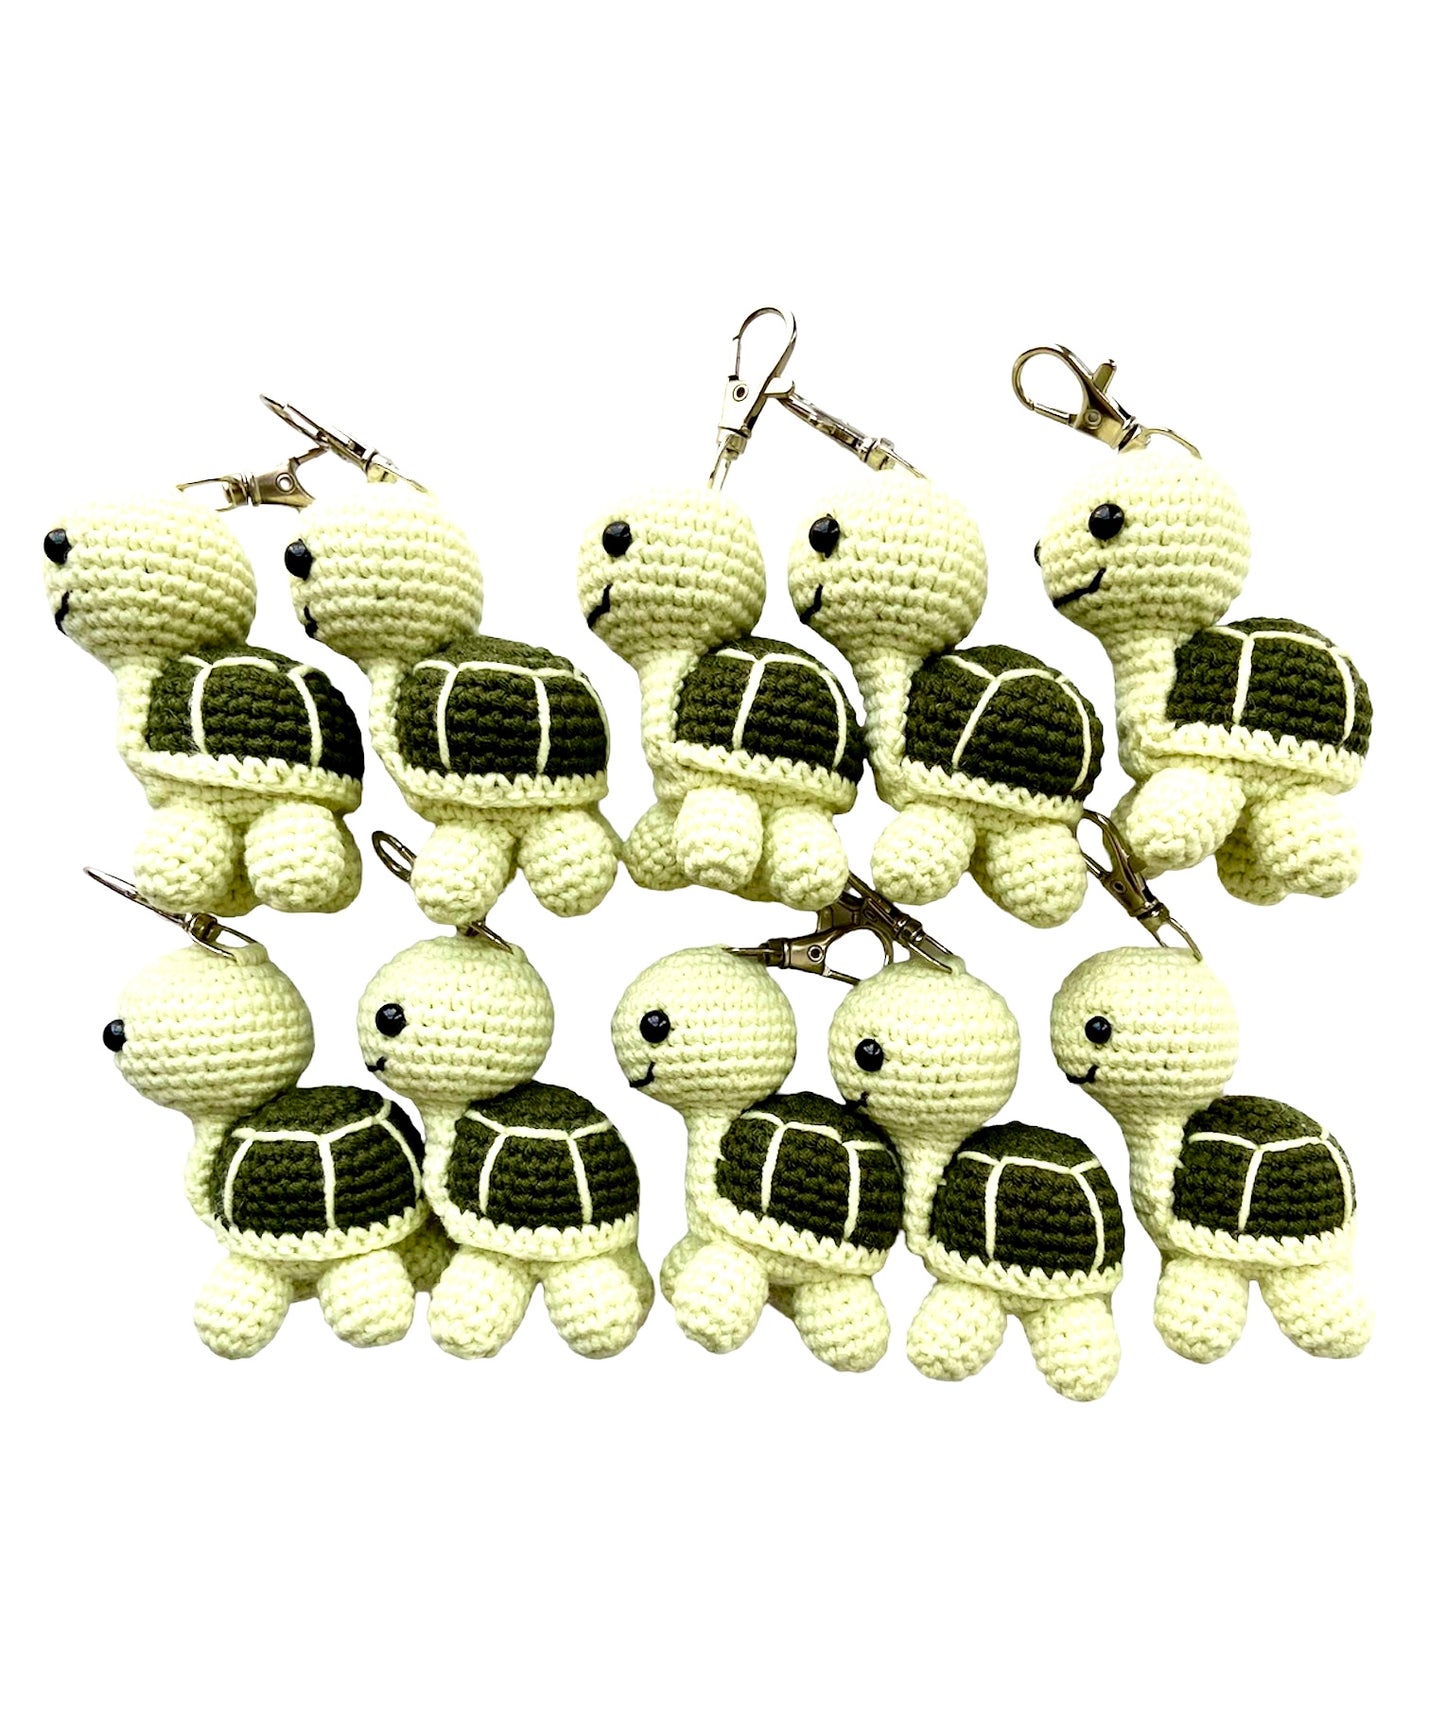 Key Ring: Turtle bag charm, Rio Handmade Turtle Crochet Keychain, Amigurumi Turtle Key chain, Tortoise Keyring, Crochet tiny turtle plush, Amigurumi accessory , Kawaii Turtle, Tortuga, Nature Lovers Gift